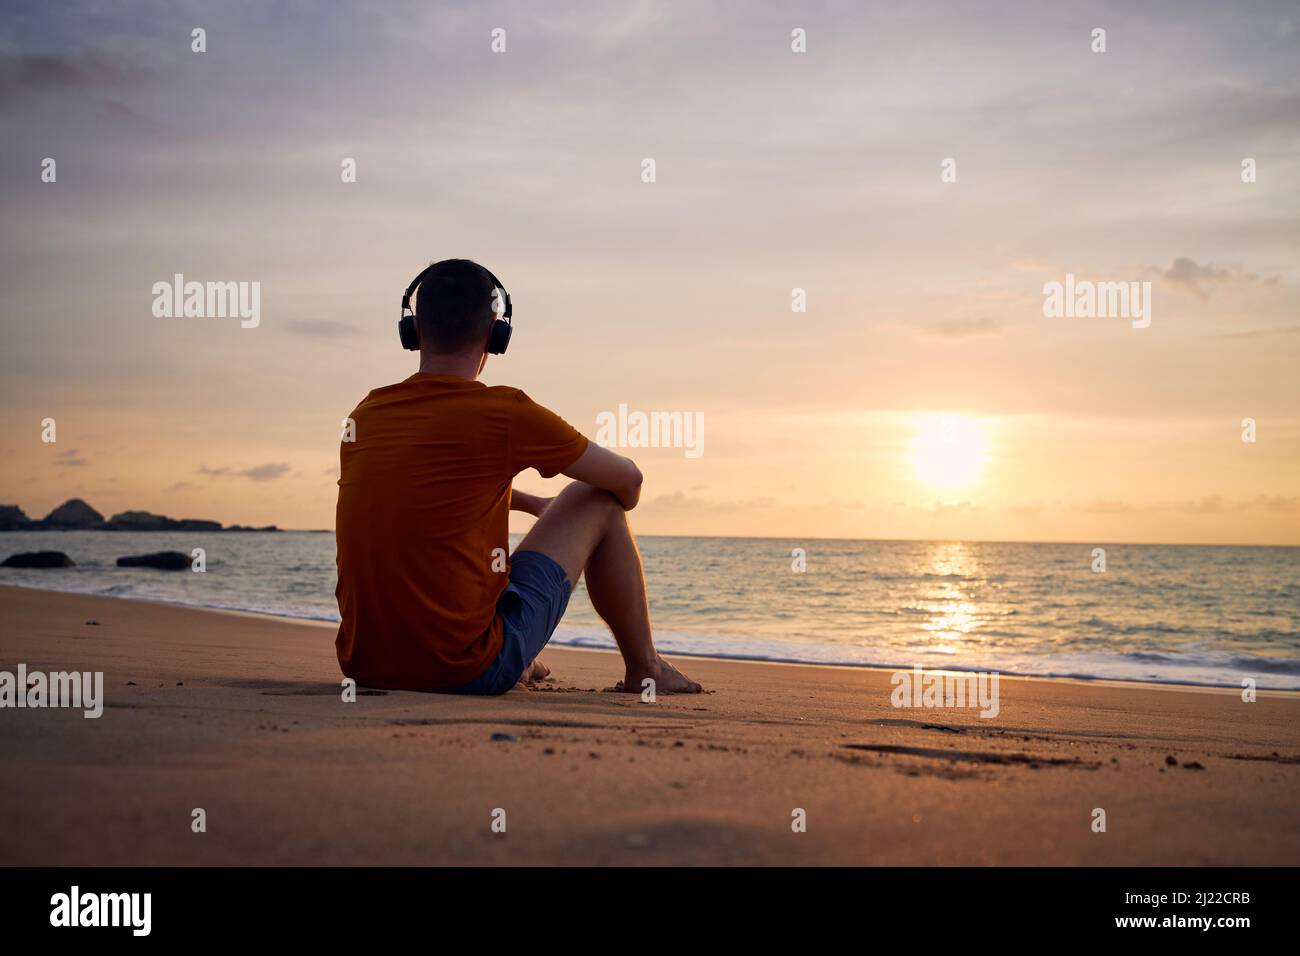 Rückansicht des Mannes mit Kopfhörern am Strand. Gelassenheit, Kontemplation und Musikhören bei schönem Sonnenuntergang. Stockfoto